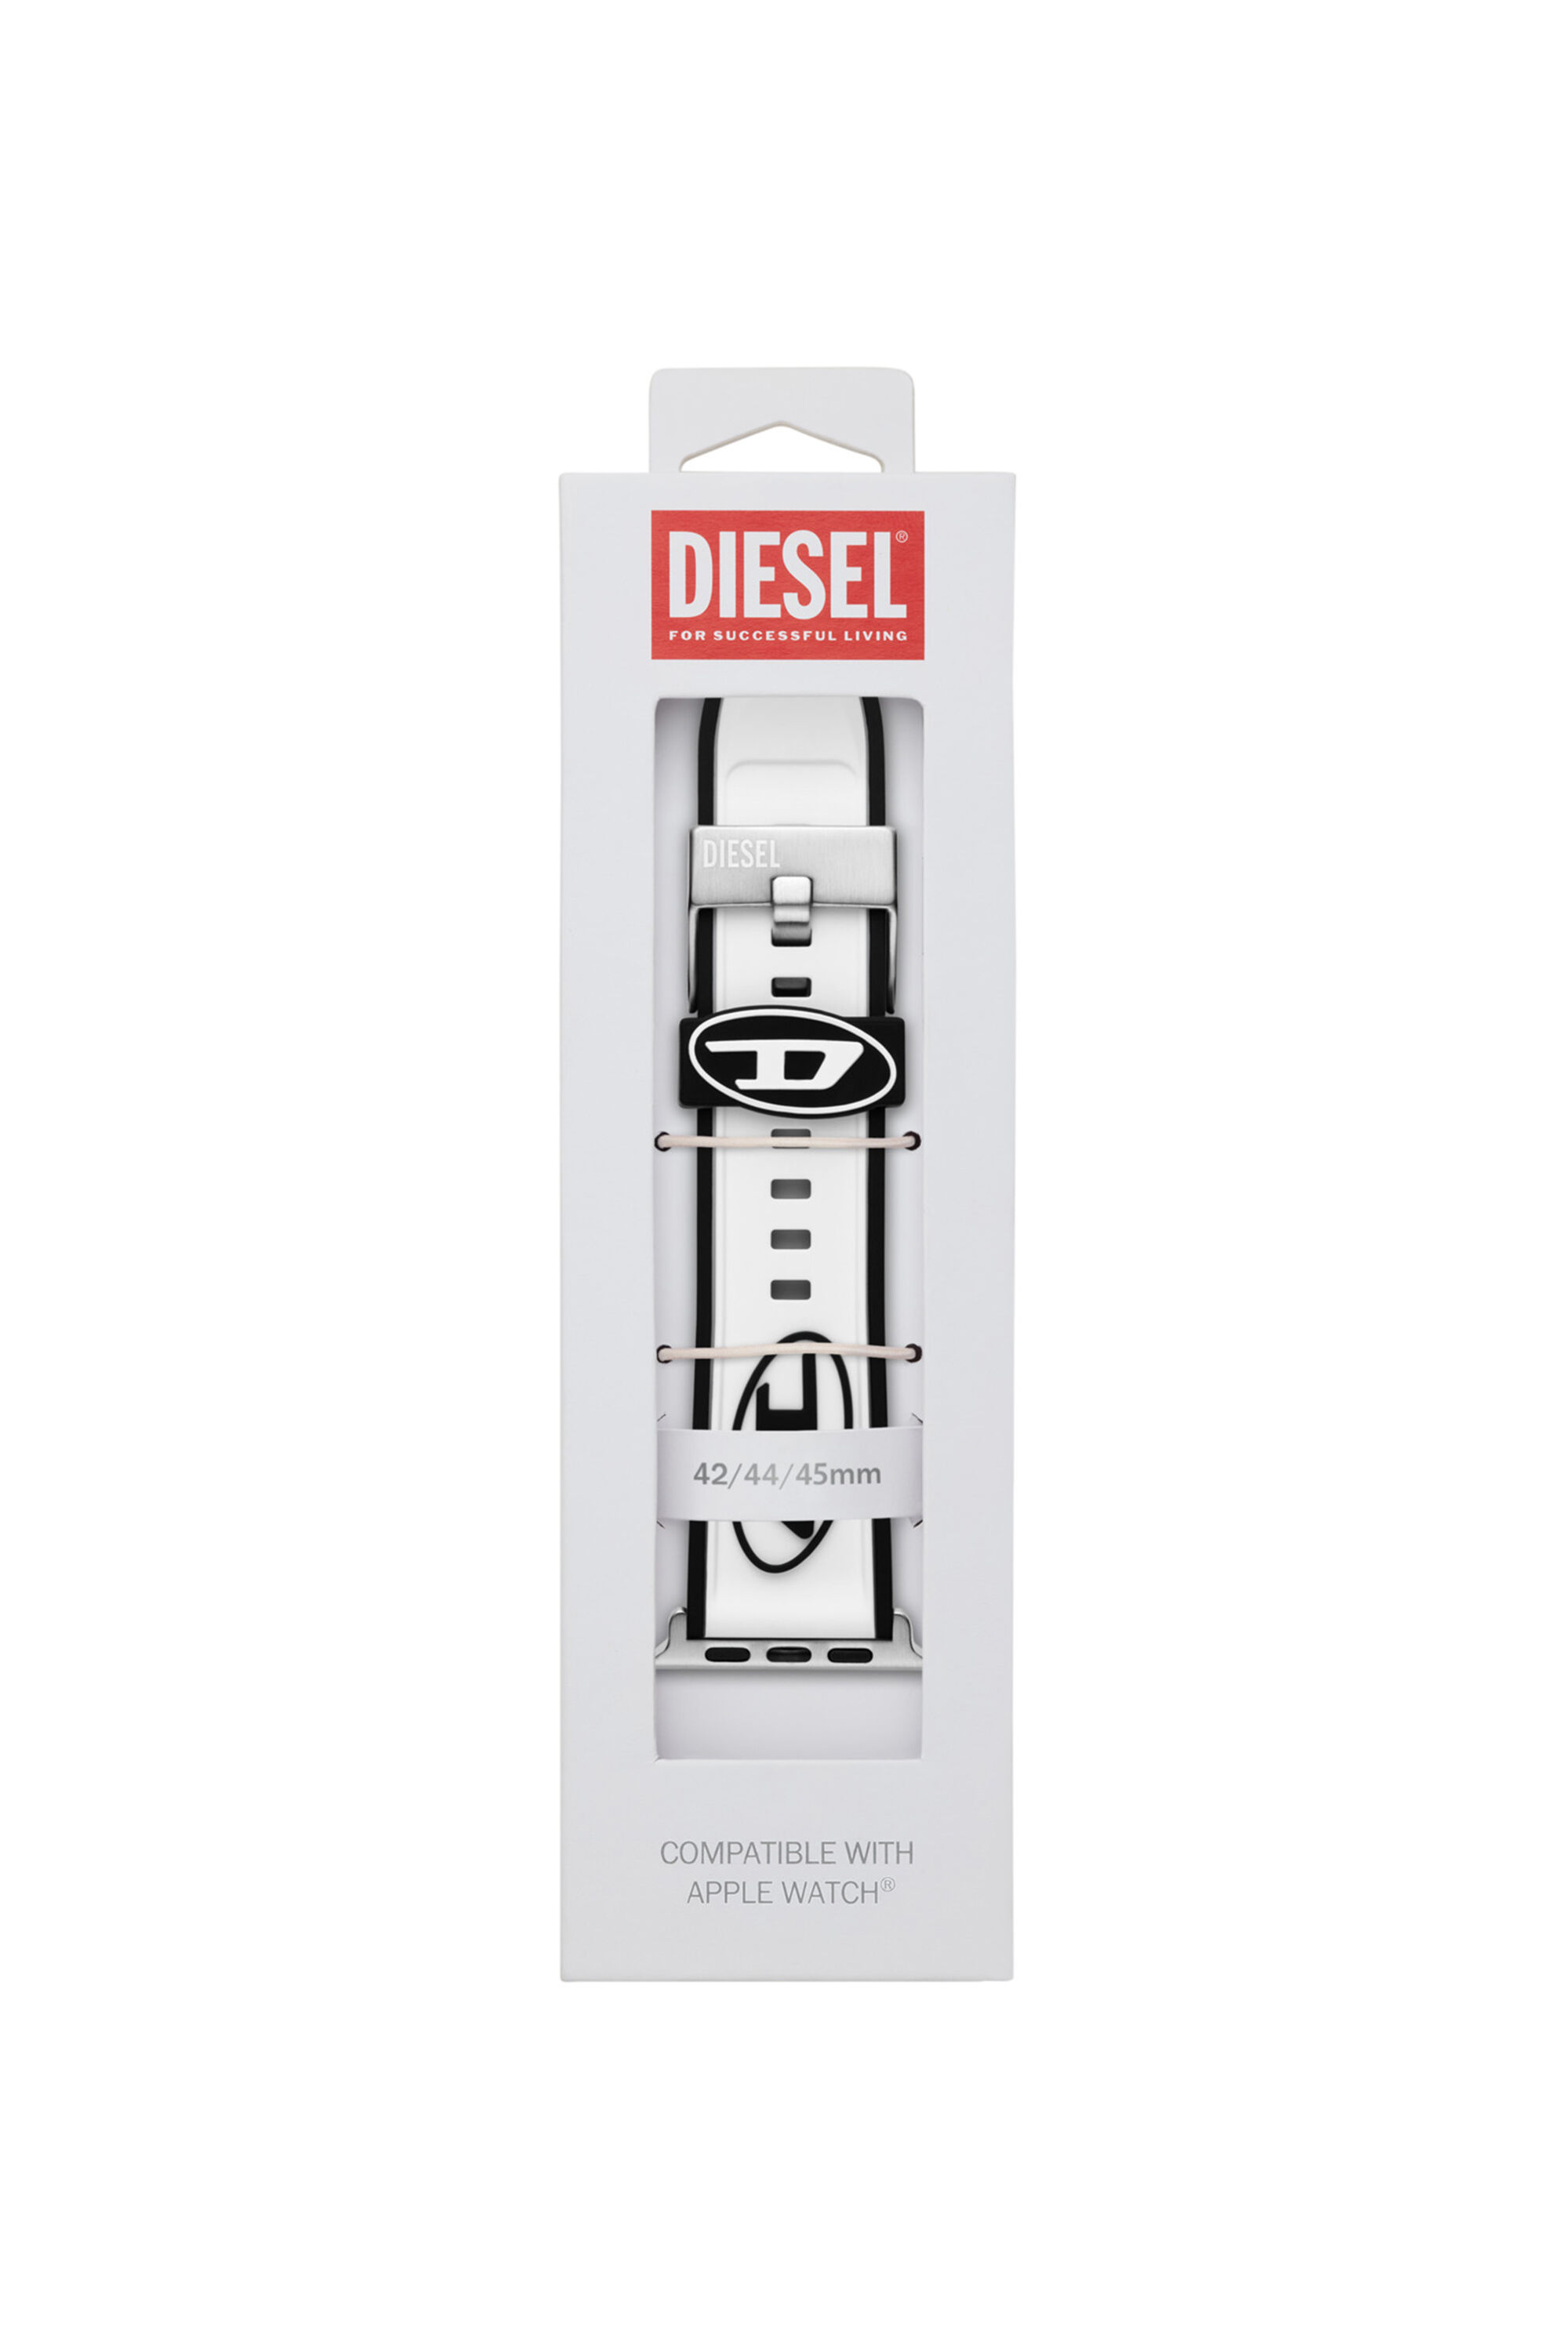 Diesel - DSS009, Weiß - Image 2